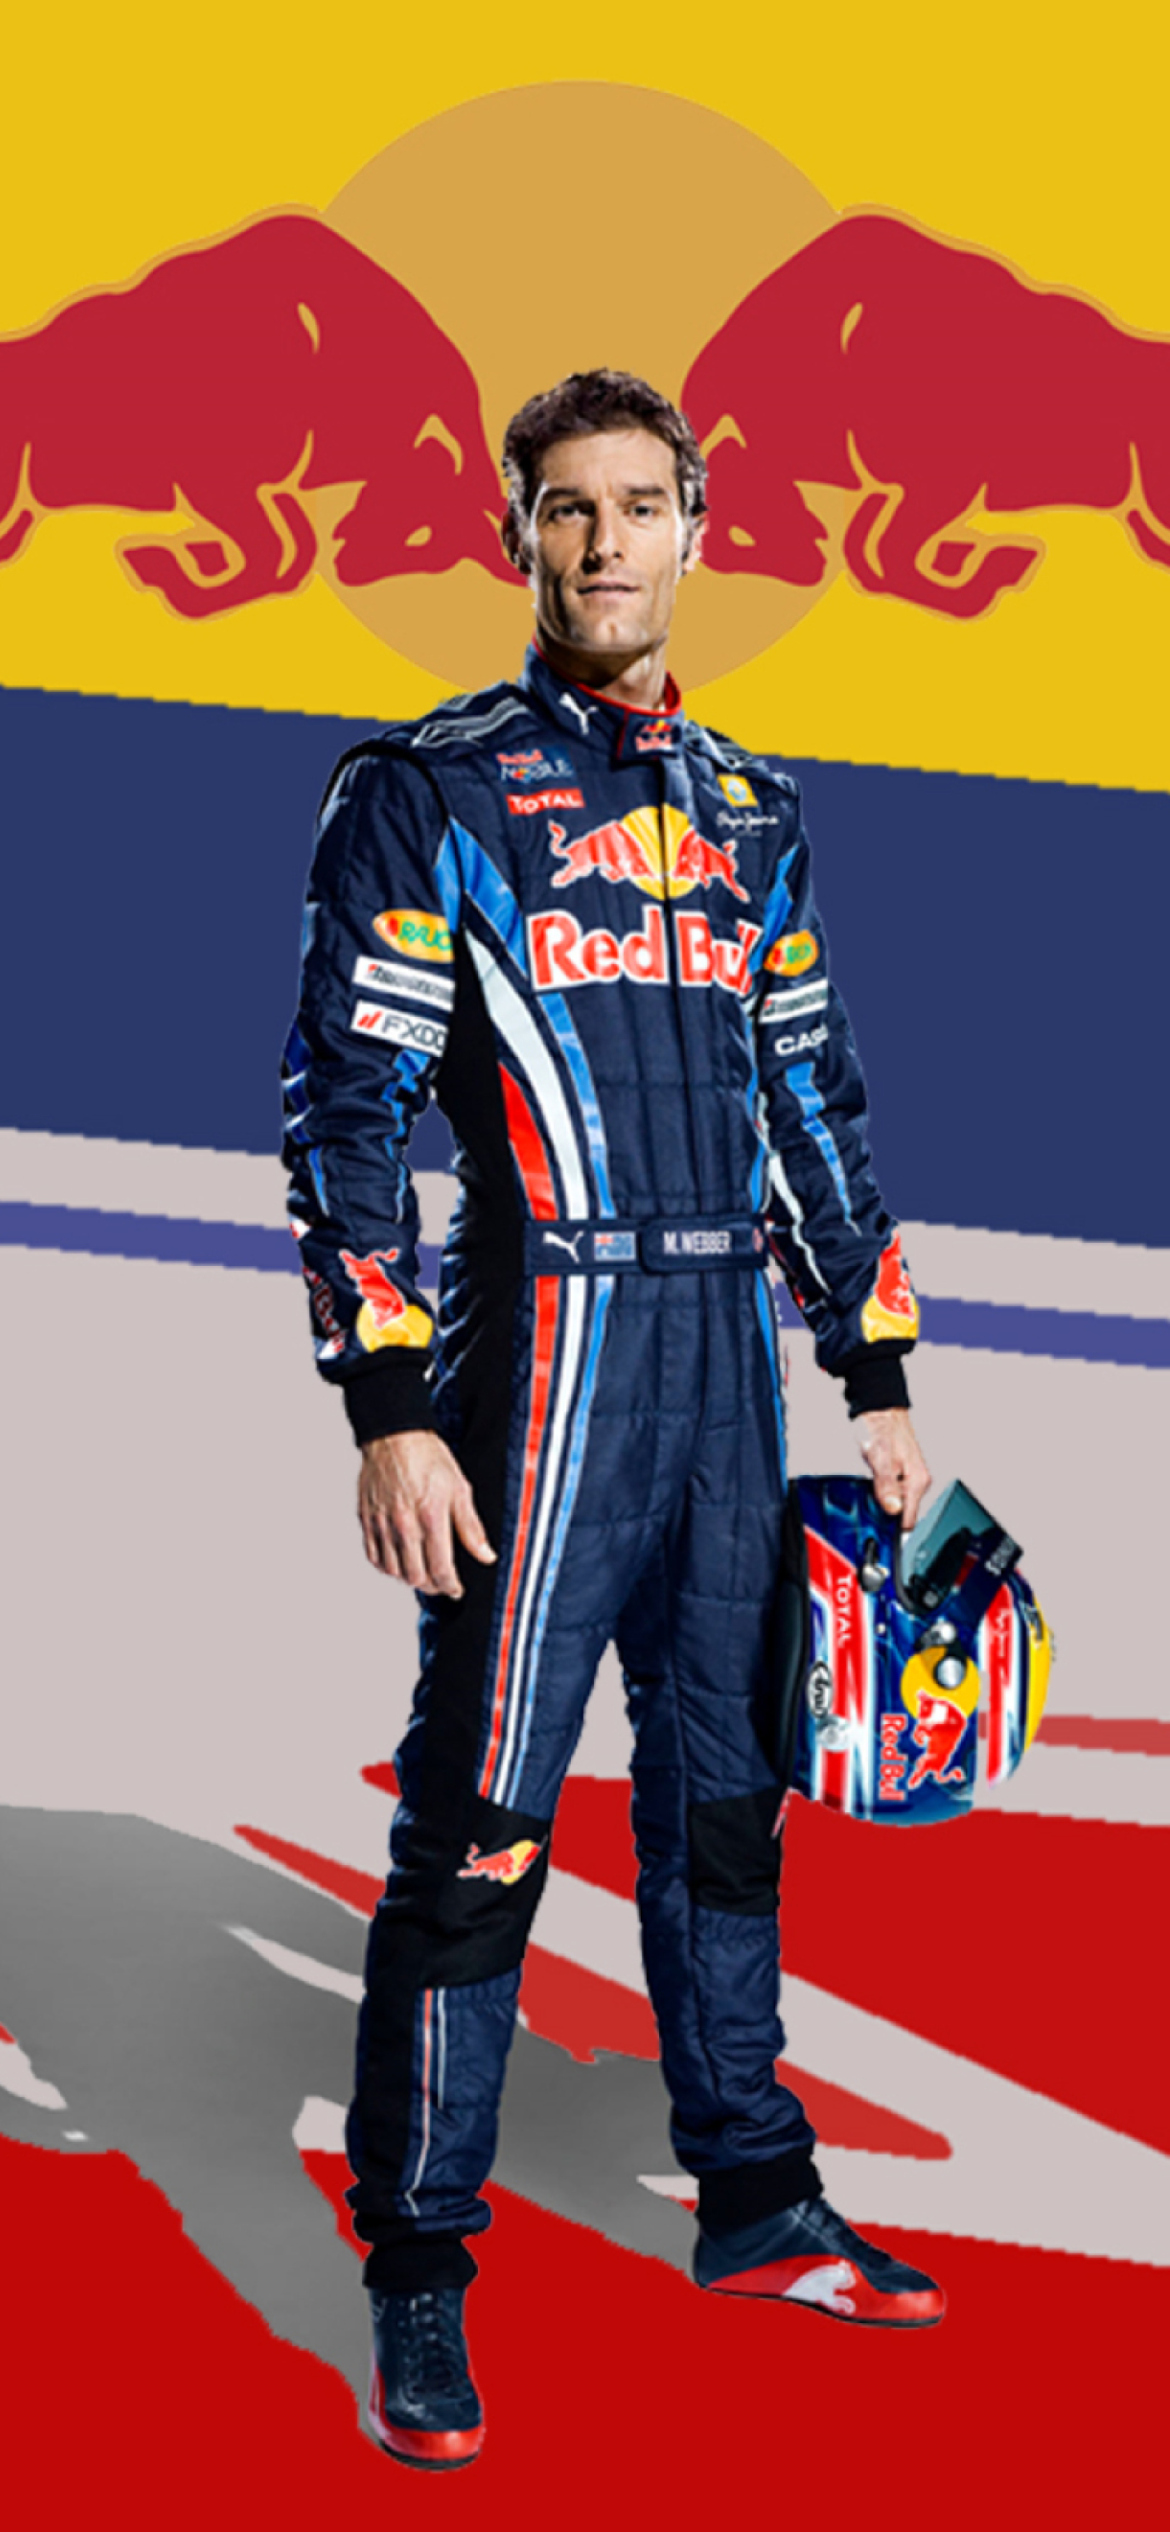 Fondo de pantalla Sebastian Vettel Red Bull 1170x2532